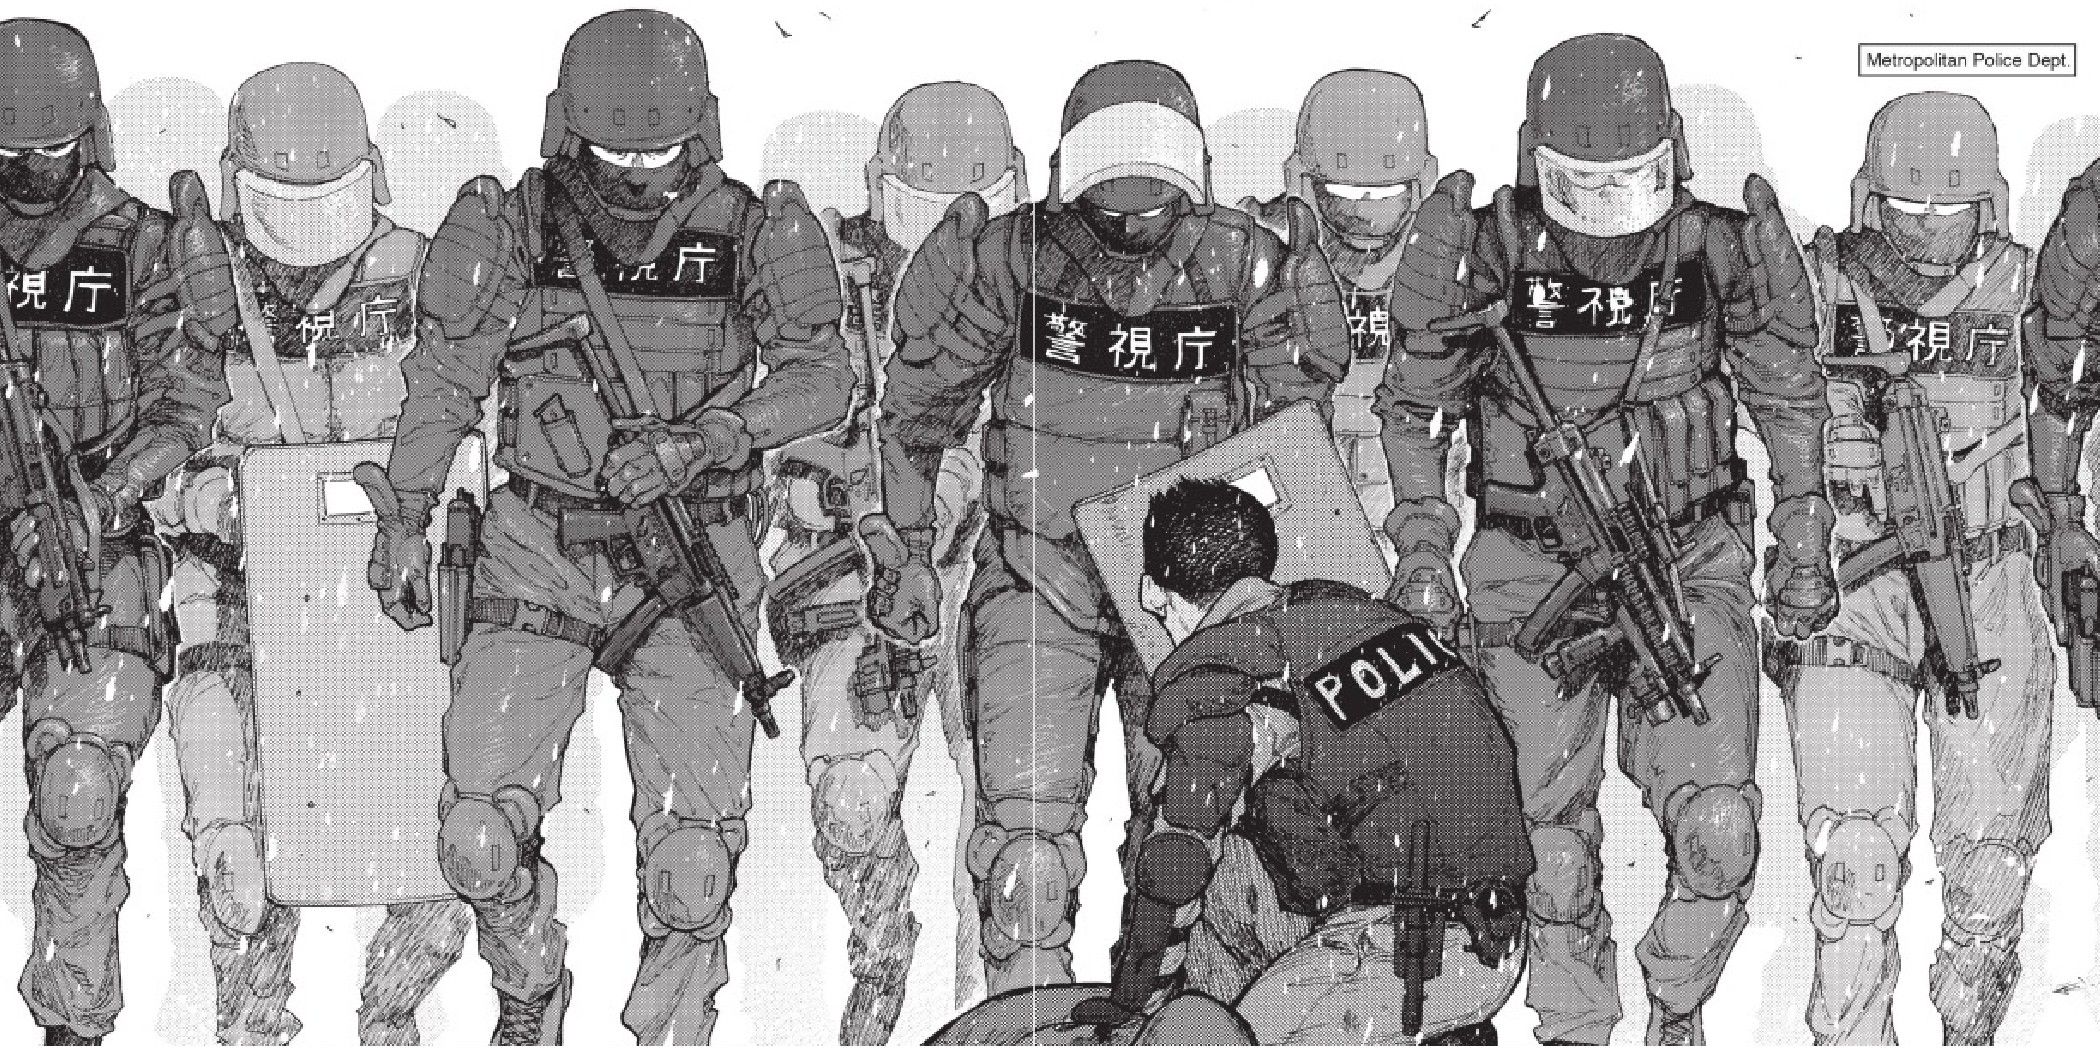 Painel de mangá Ajin representando um grupo de policiais.